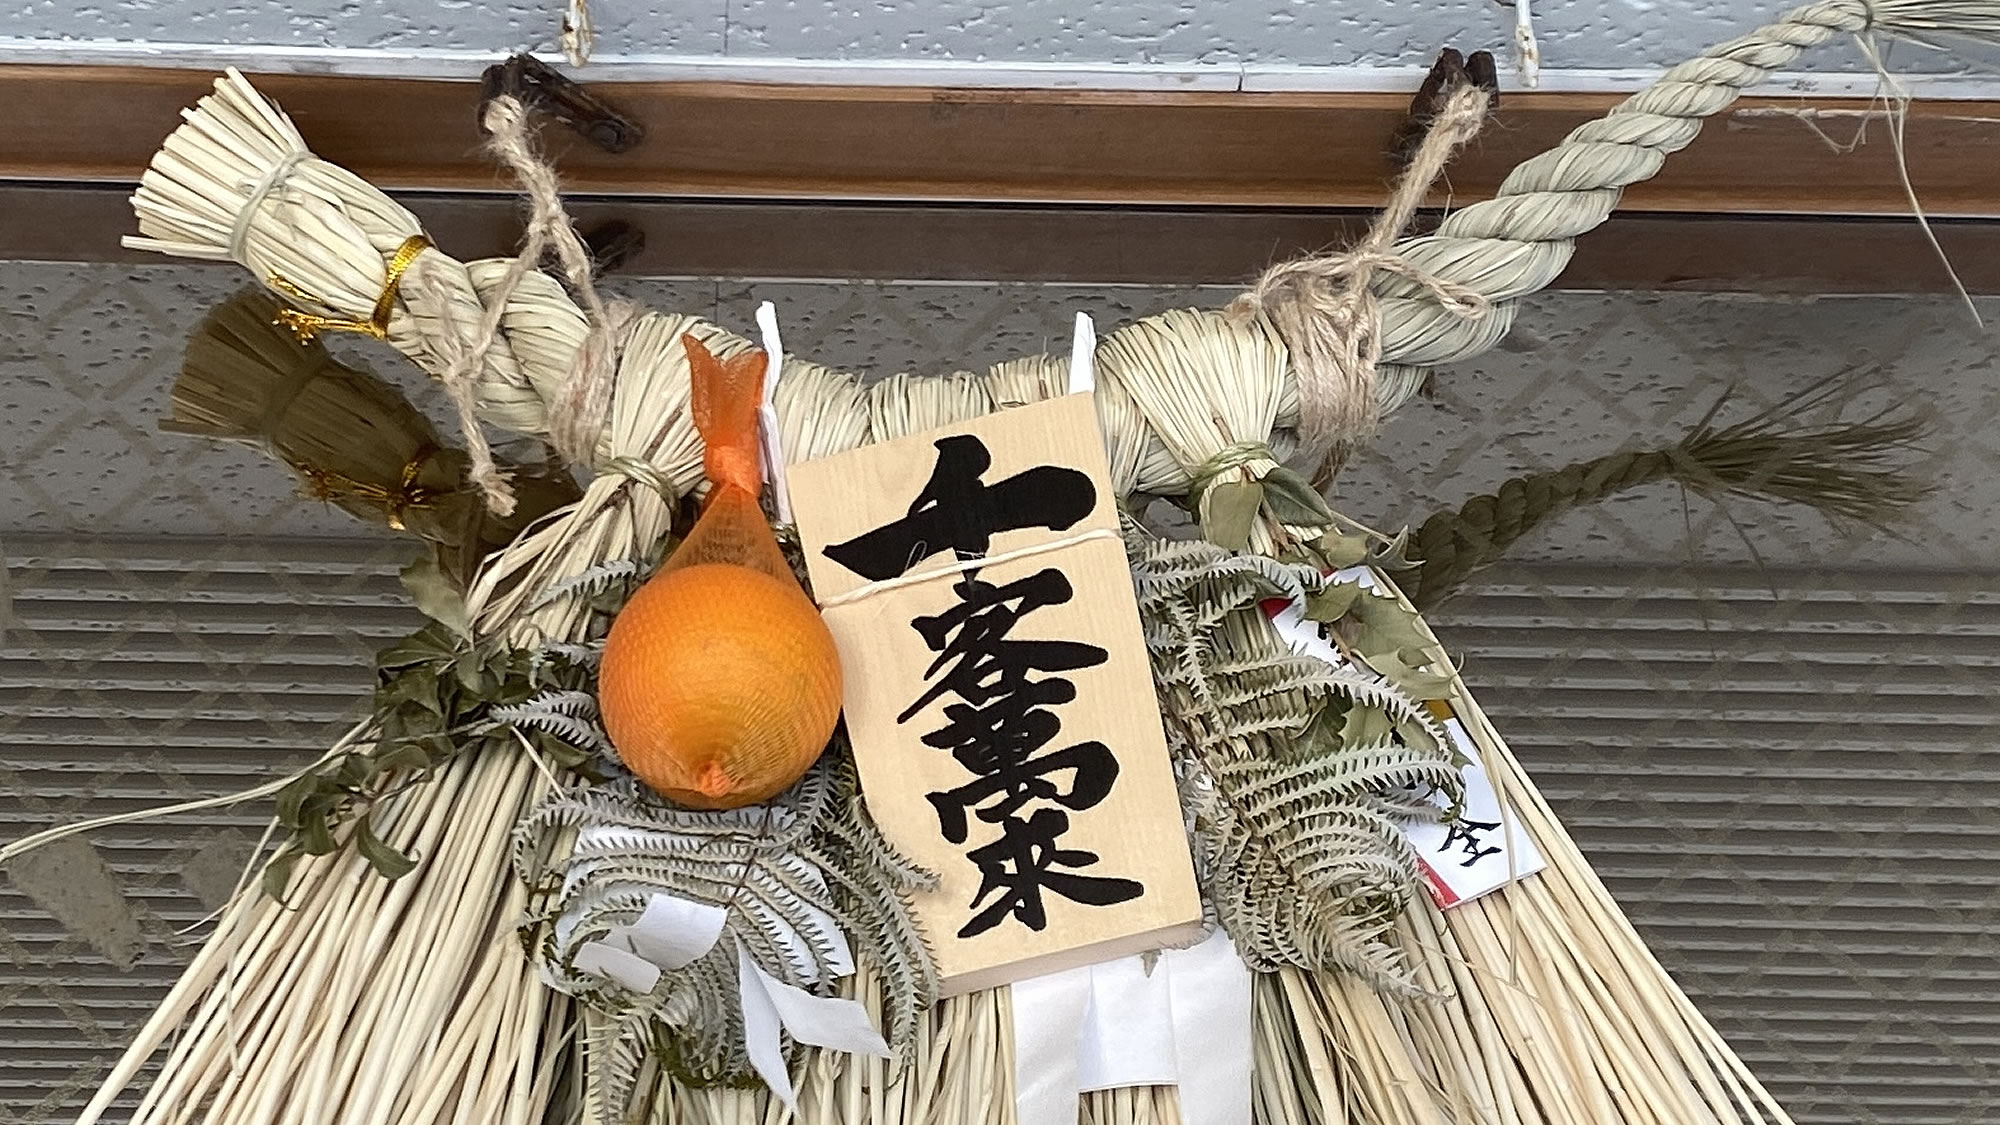 ここ伊勢志摩では一年を通して、しめ縄を飾る風習があります。